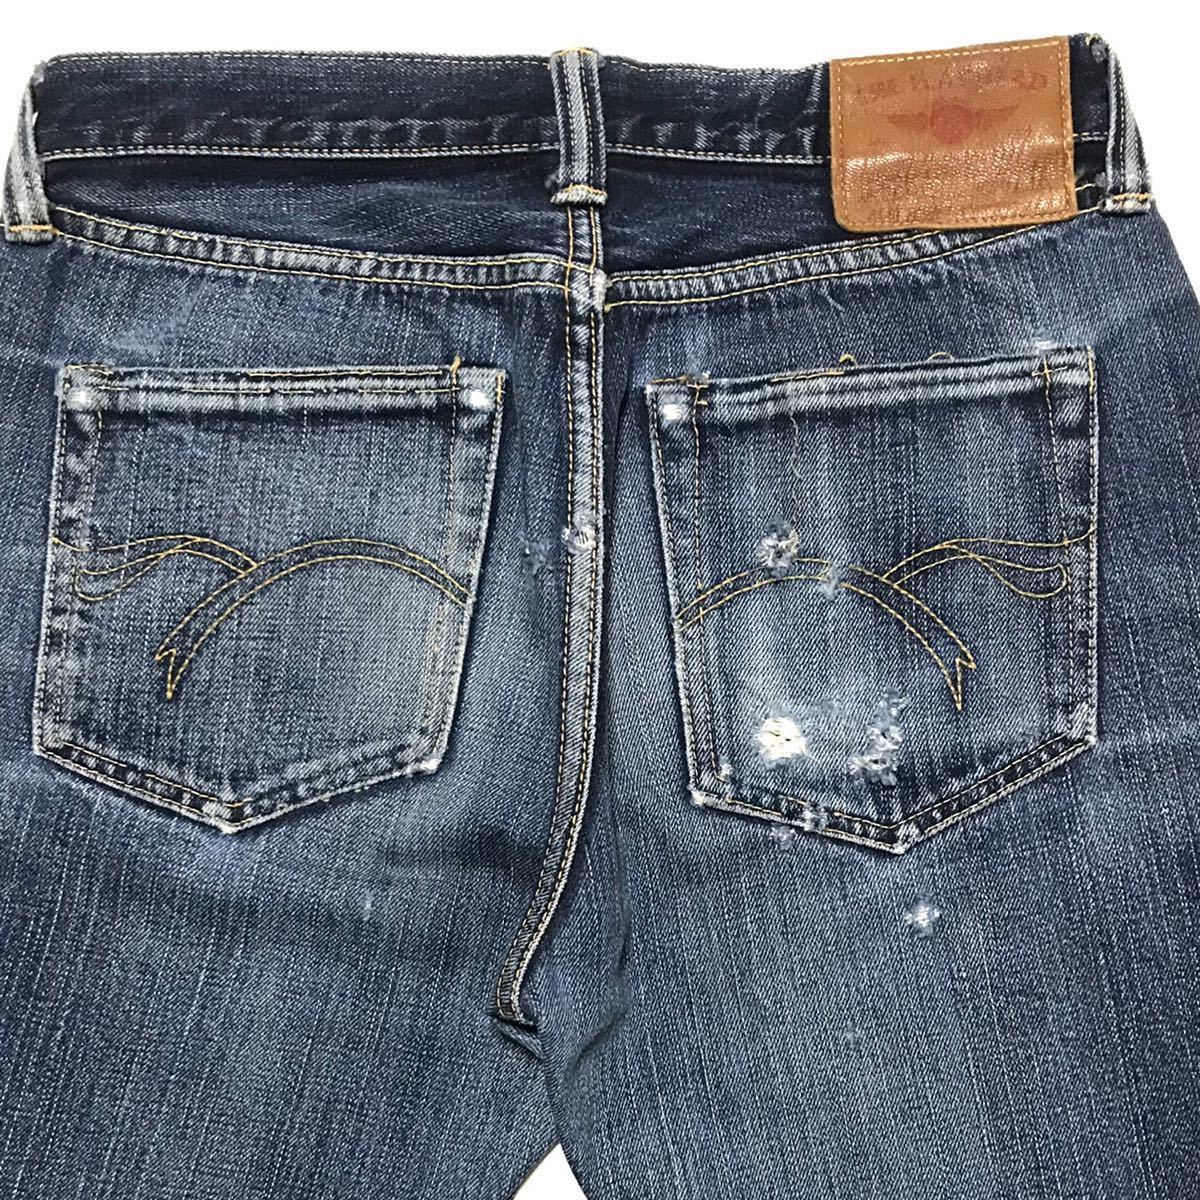 [ сделано в Японии ] старый THE FLAT HEAD 3005 Flat Head Vintage копия джинсы W29 цвет .. красный уголок hige сетка (желудок) Denim брюки снят с производства редкость 